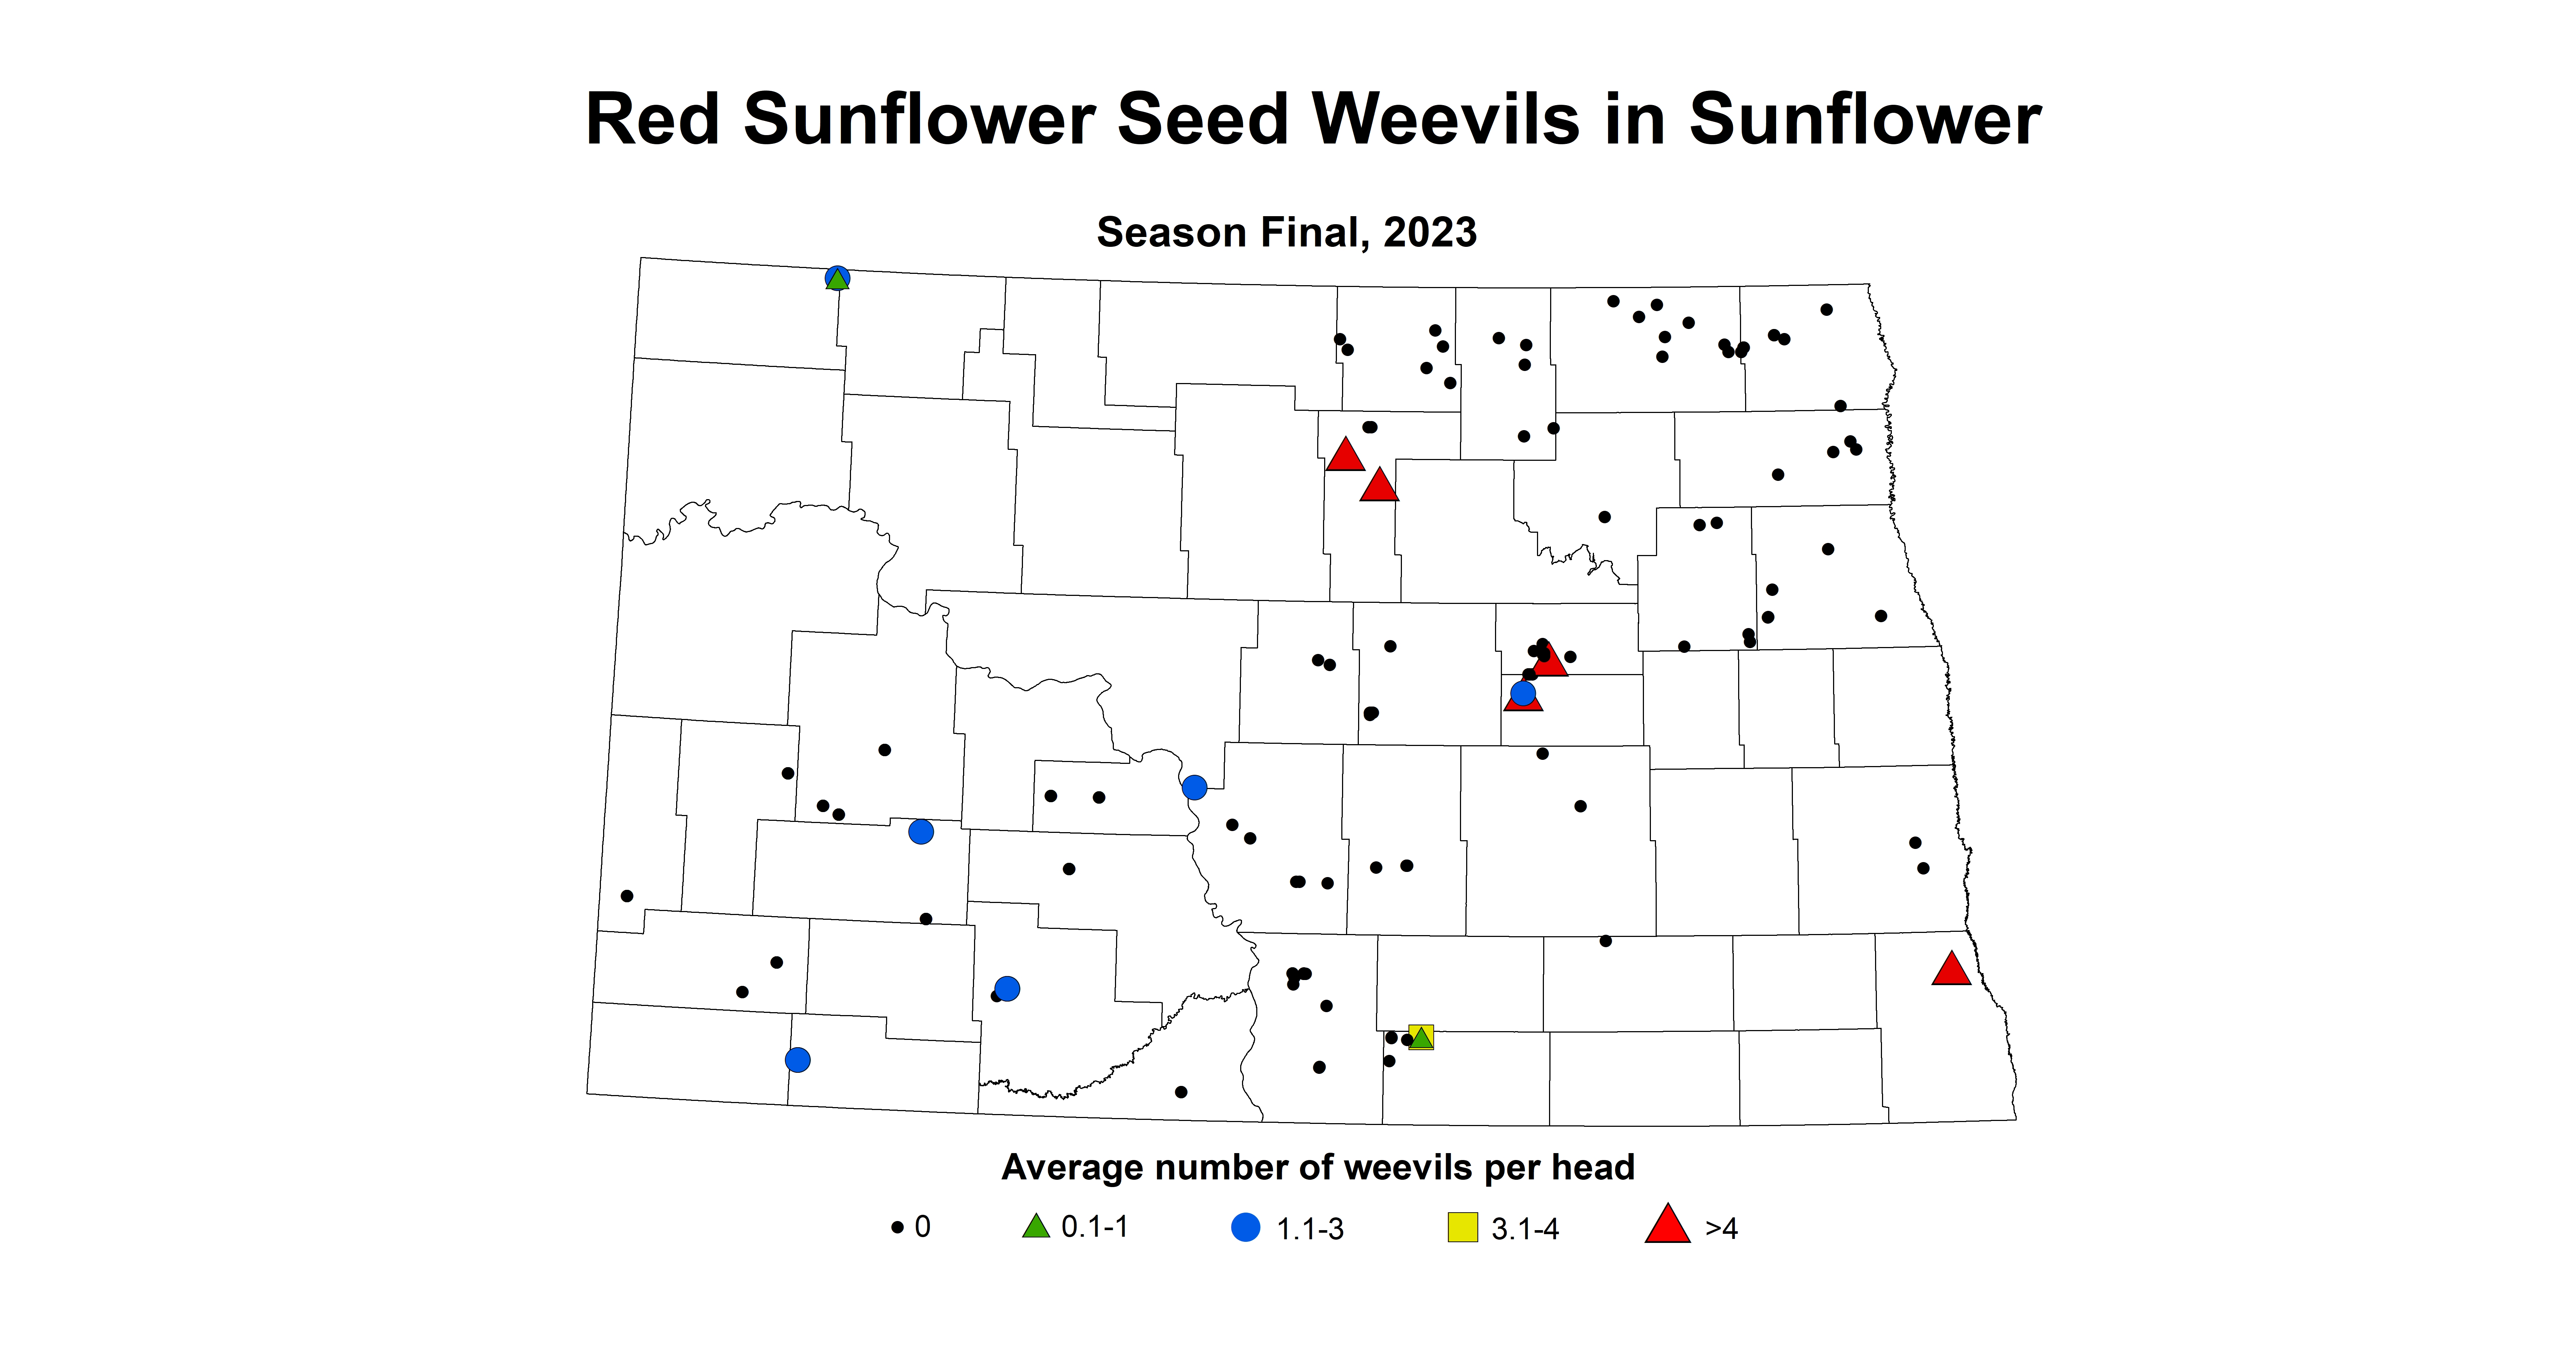 red sunflower seed weevils season final 2023